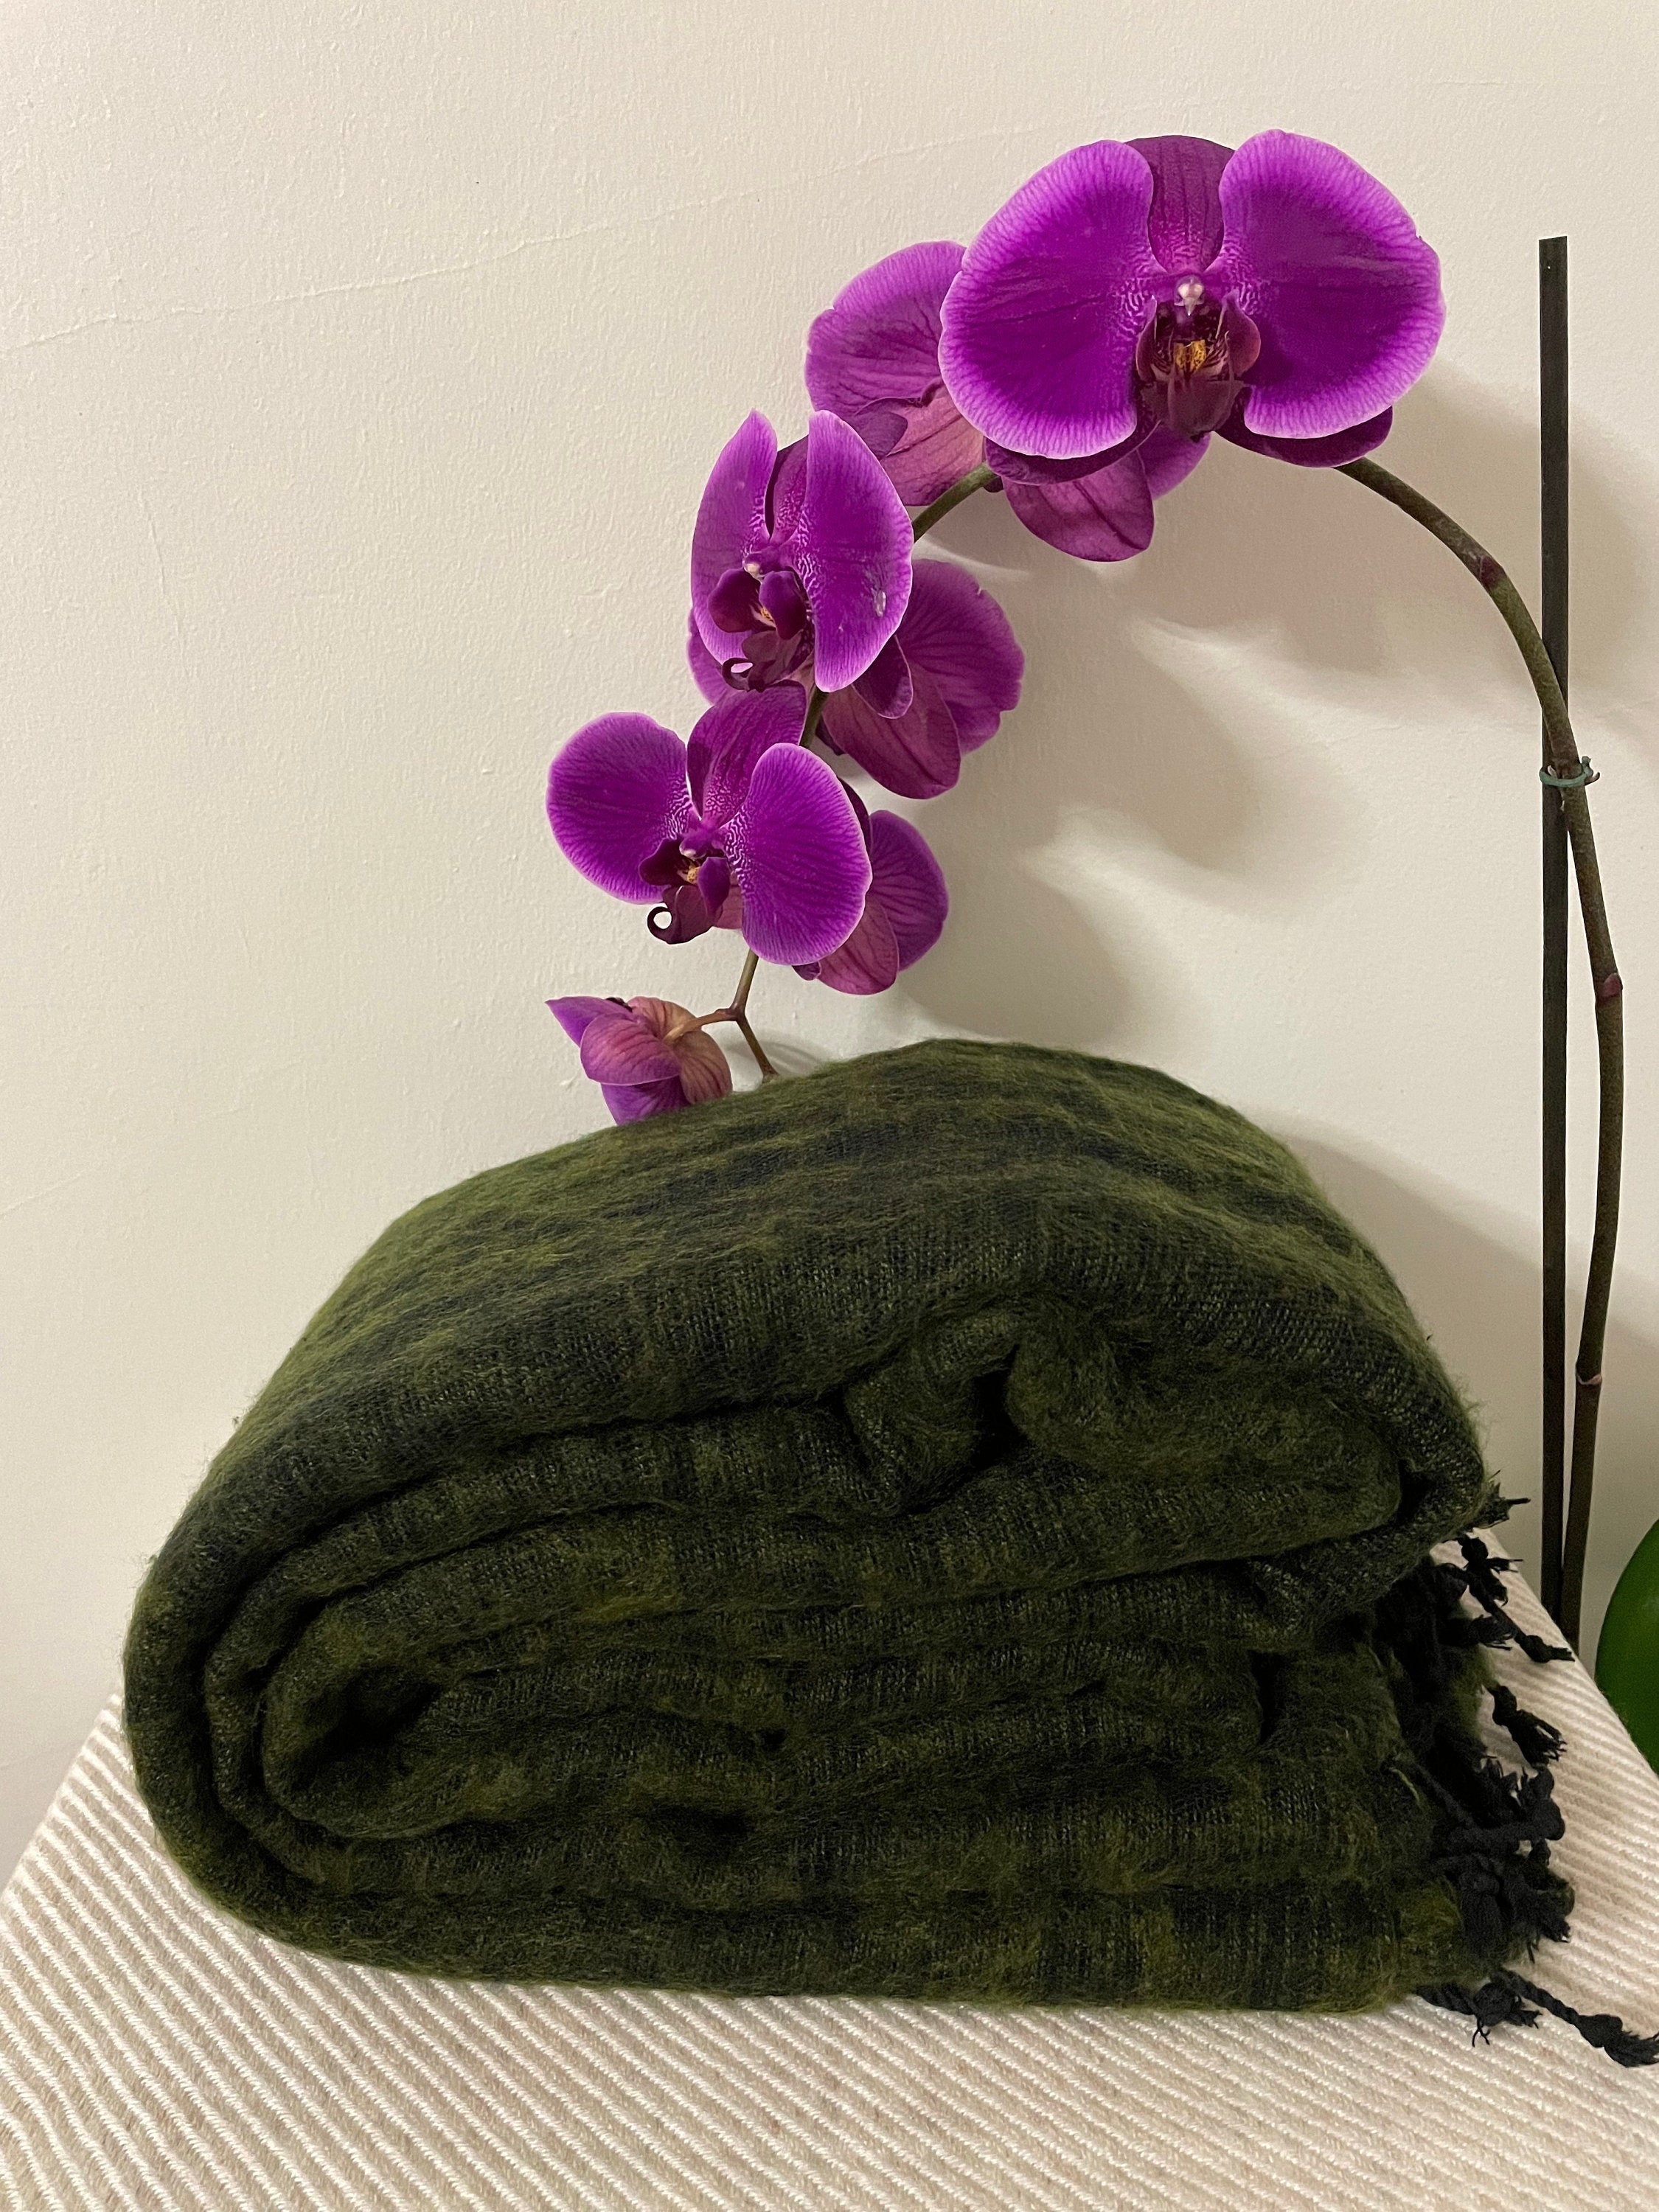 Green Yak Wool Meditation Blanket 'XL' Yogic Shawl 